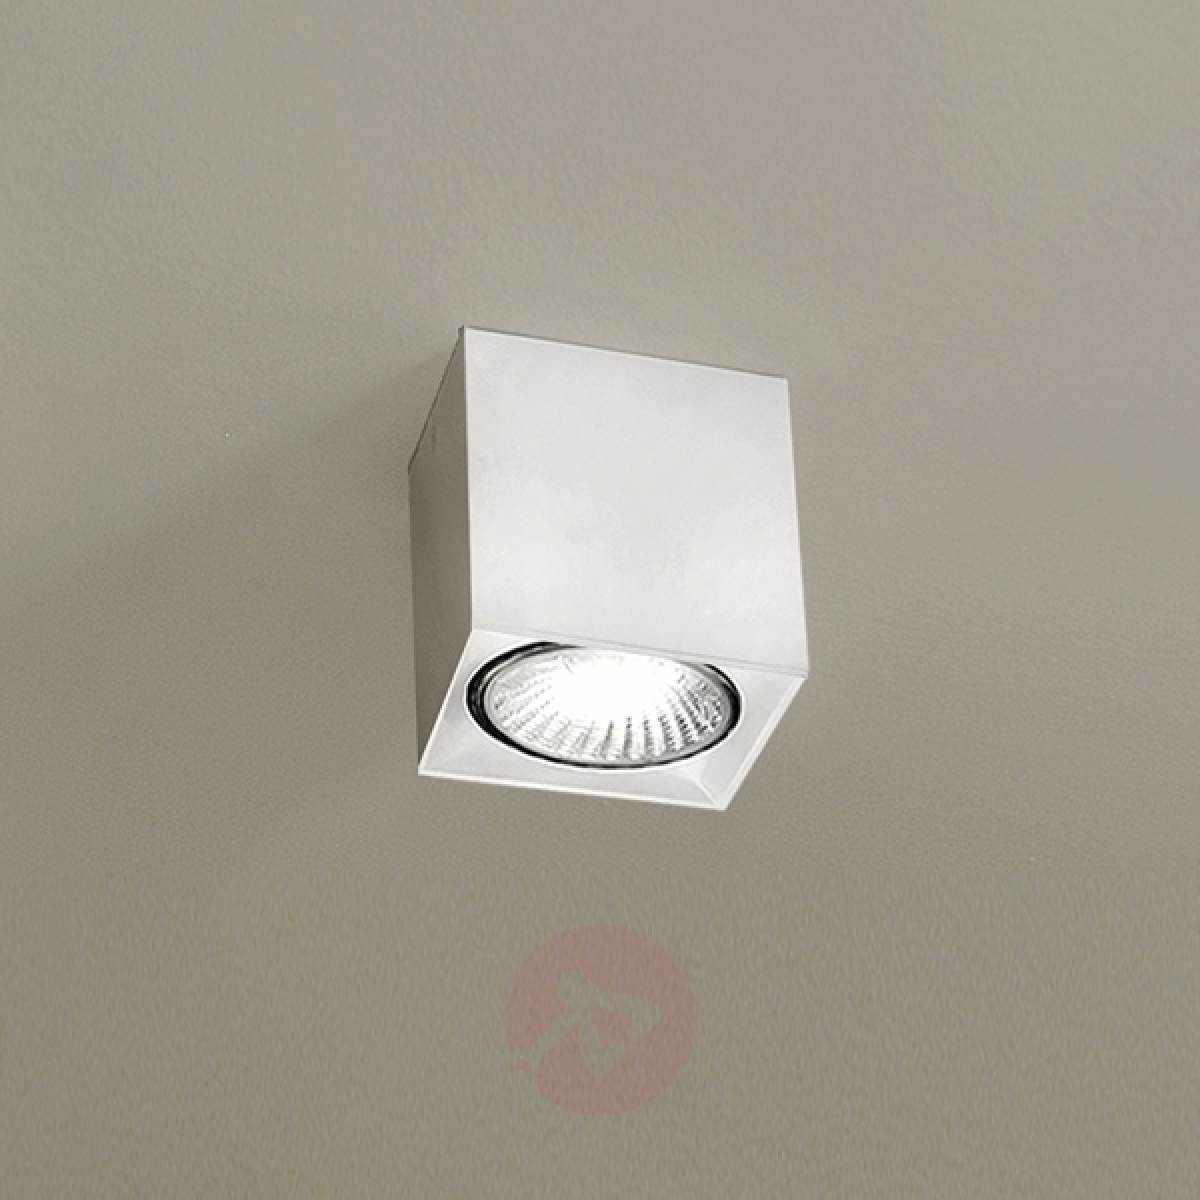 Milan Biała lampa sufitowa DAU SPOT z kształcie kostki